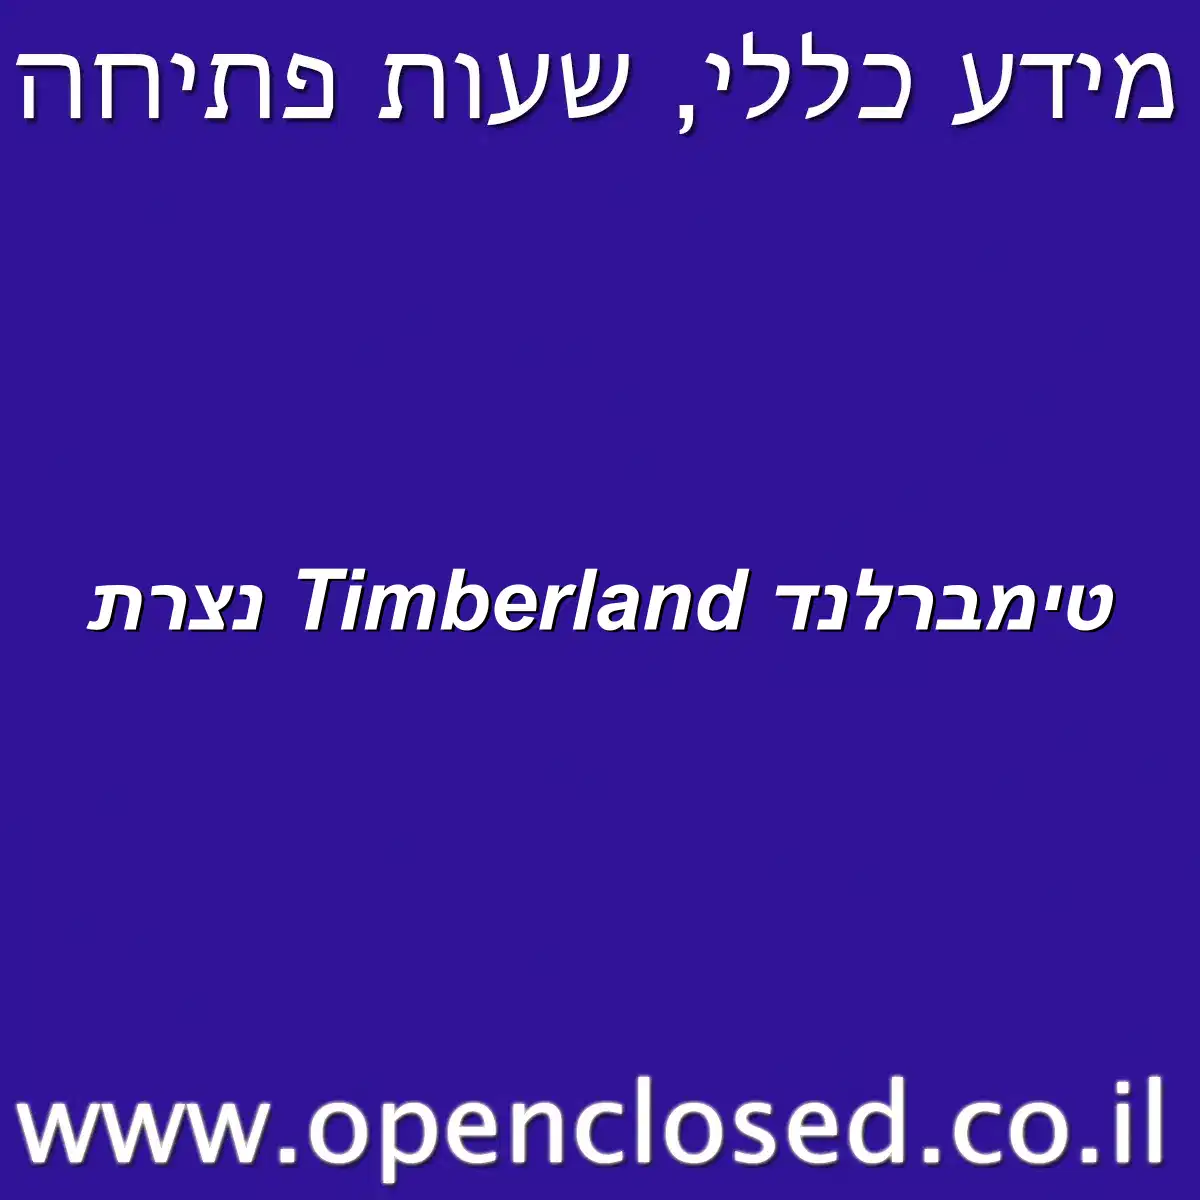 טימברלנד Timberland נצרת